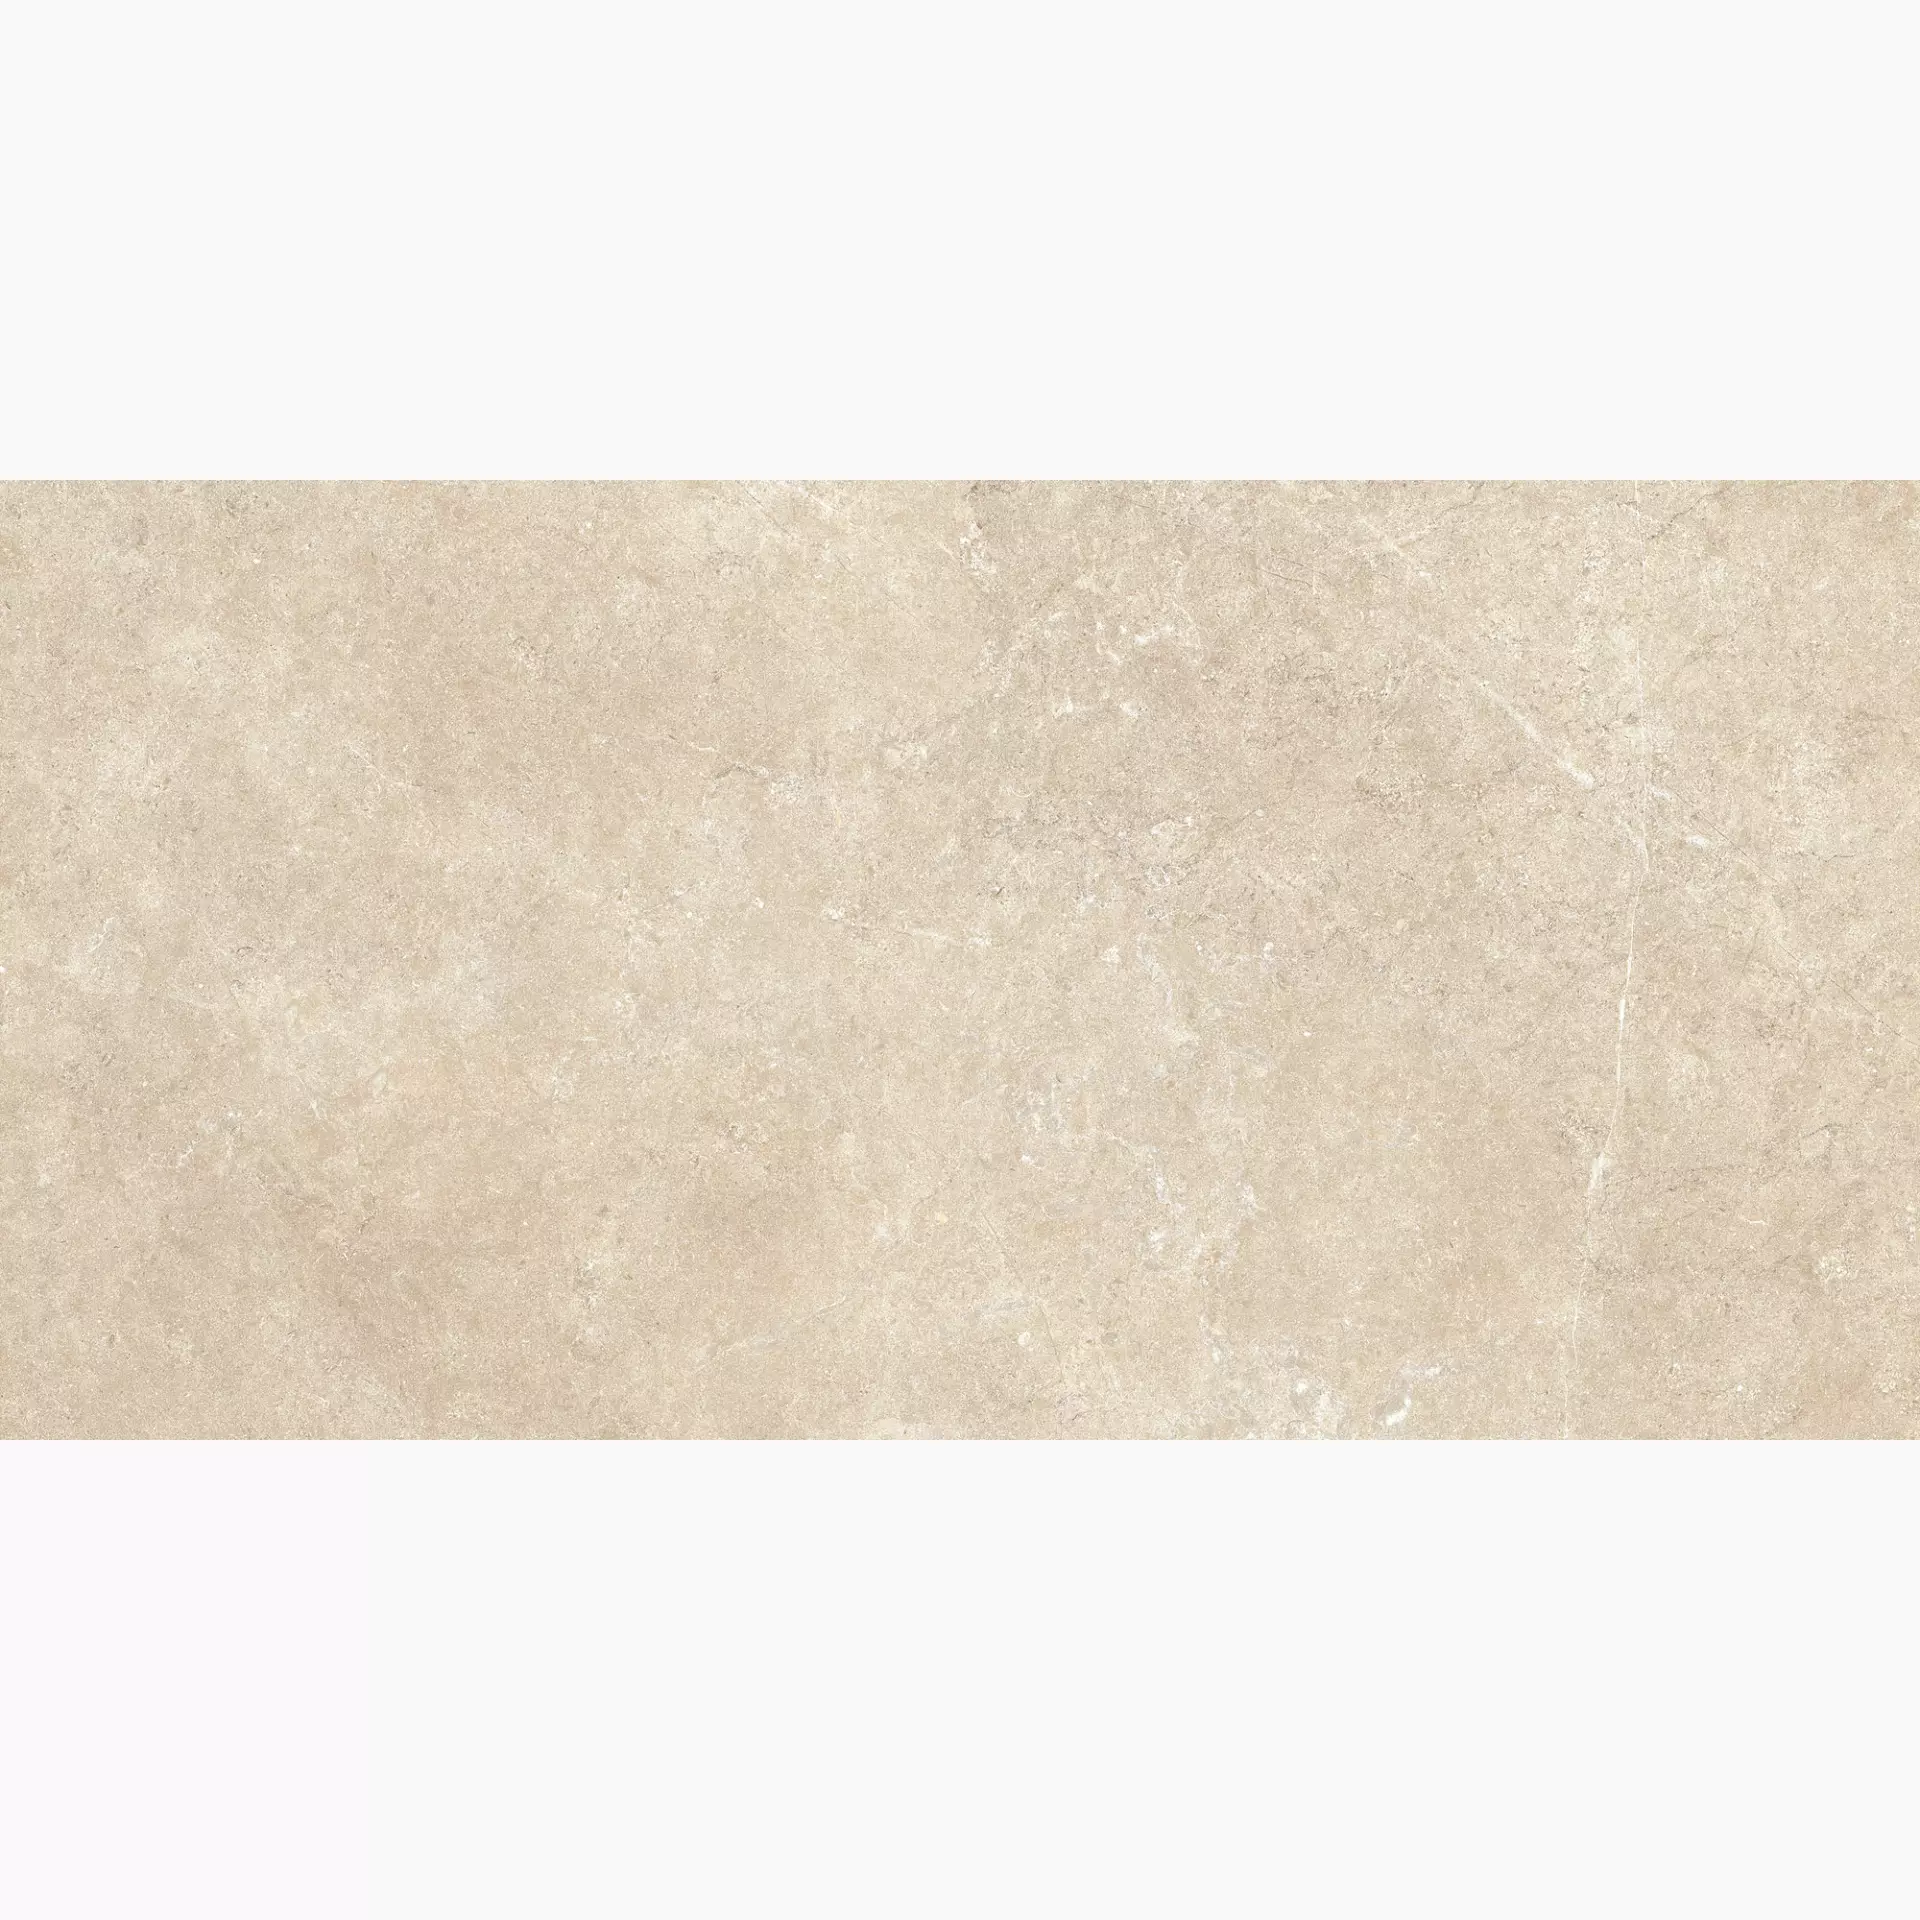 Ragno Realstone Argent Sabbia Naturale – Ptv R9KL 60x120cm 9,5mm